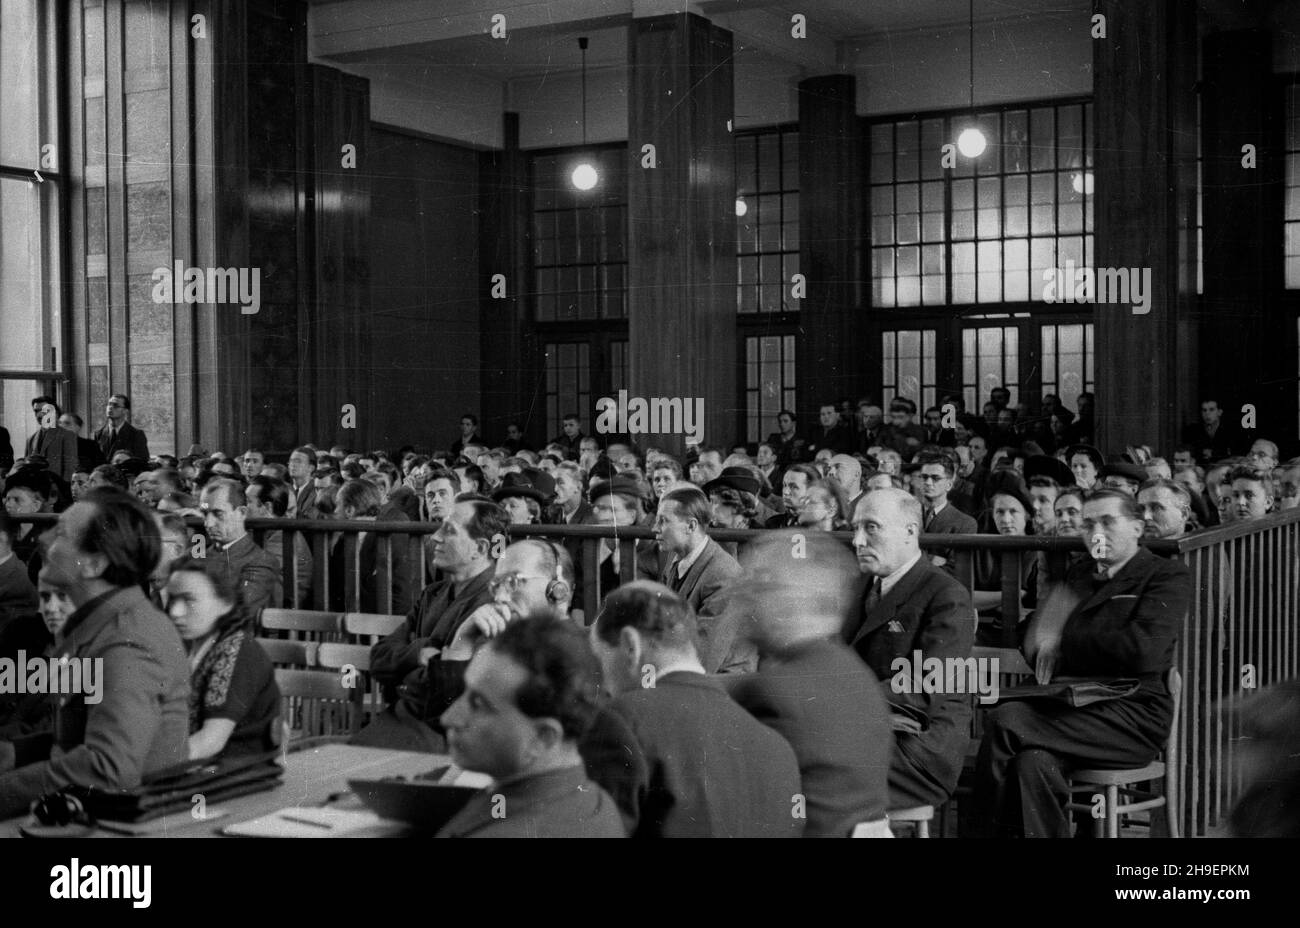 Kraków, 1947-11-24. Posiedzenie Najwy¿szego Trybuna³u Narodowego w sali Muzeum Narodowego. Pierwszy dzieñ rozprawy przeciwko 40 zbrodniarzom hitlerowskim z SS, cz³onkom za³ogi niemieckiego obozu zag³ady w Auschwitz-Birkenau (Oœwiêcim- Brzezinka).  bk/mgs  PAP      Cracow, Nov. 24, 1947. The session of the Highgest National Tribunal at a National Museum Hall. The 1st day of the trial against 40 Nazi criminals from the SS, staffers of the Nazi death camp in Auschwitz-Birkenau (Oswiecim- Brzezinka).   bk/mgs  PAP Stock Photo